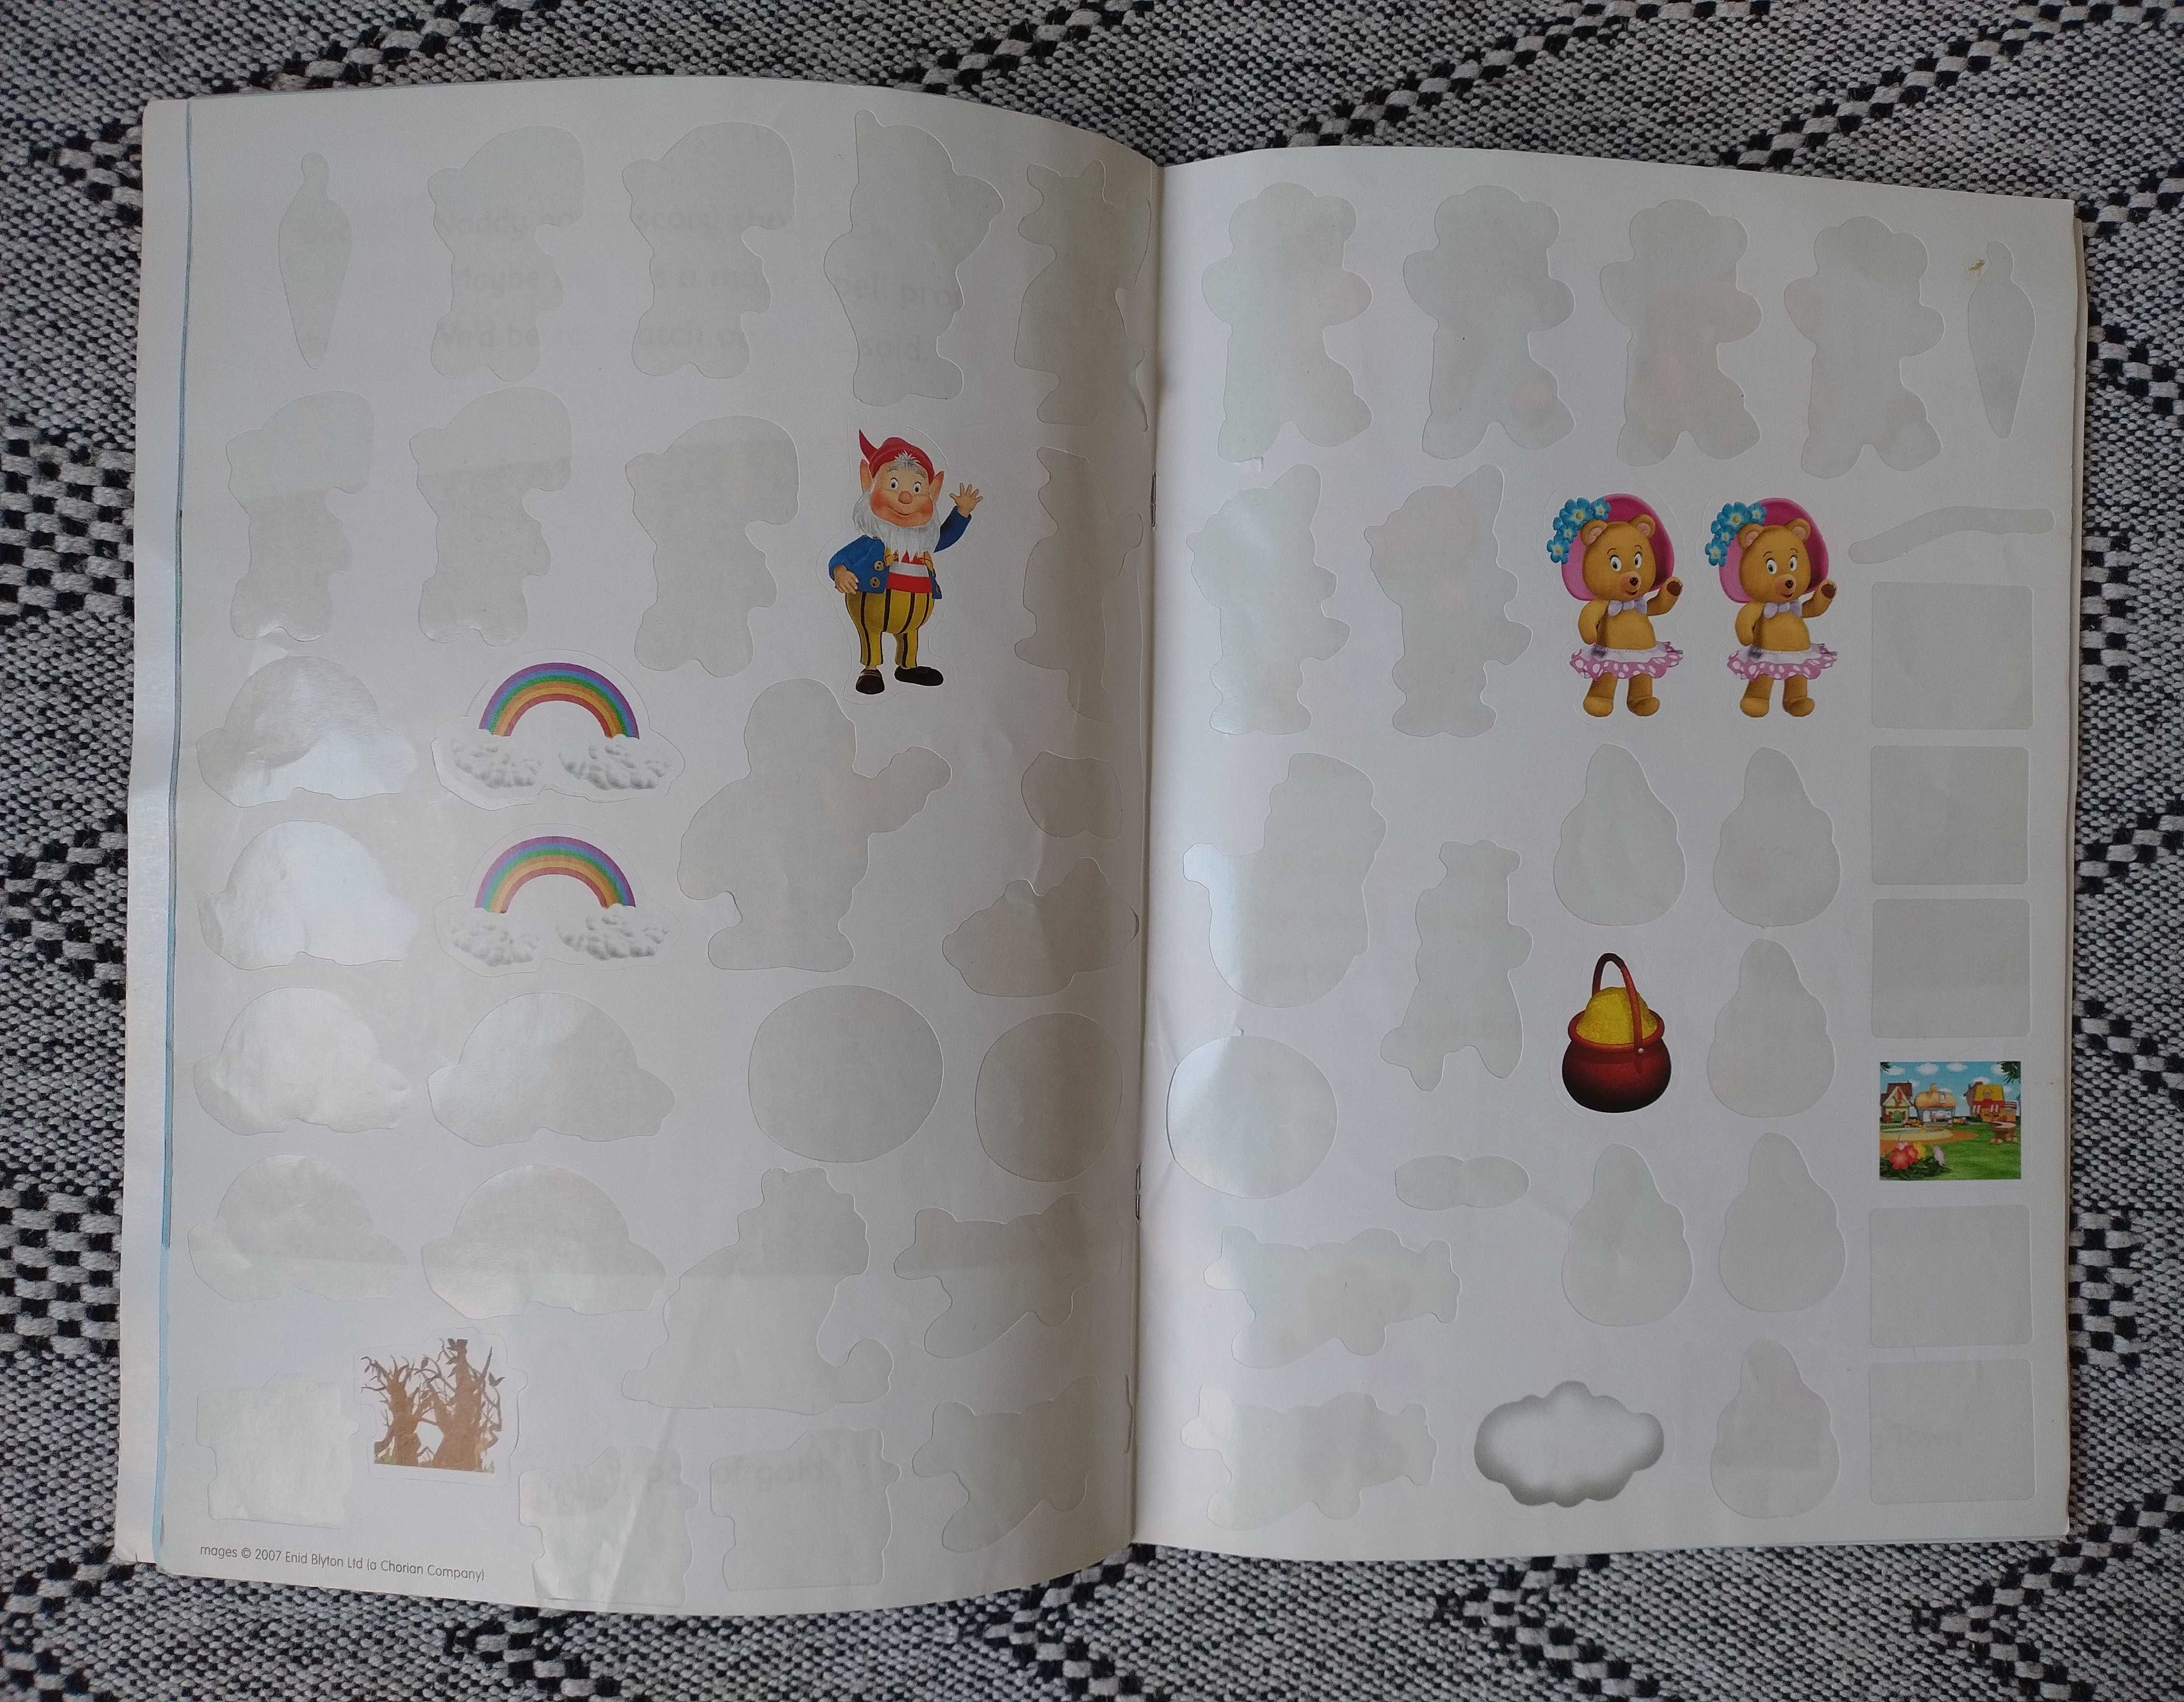 Learn to read with Noddy the Rainbow Chaser książka dzieci angielski